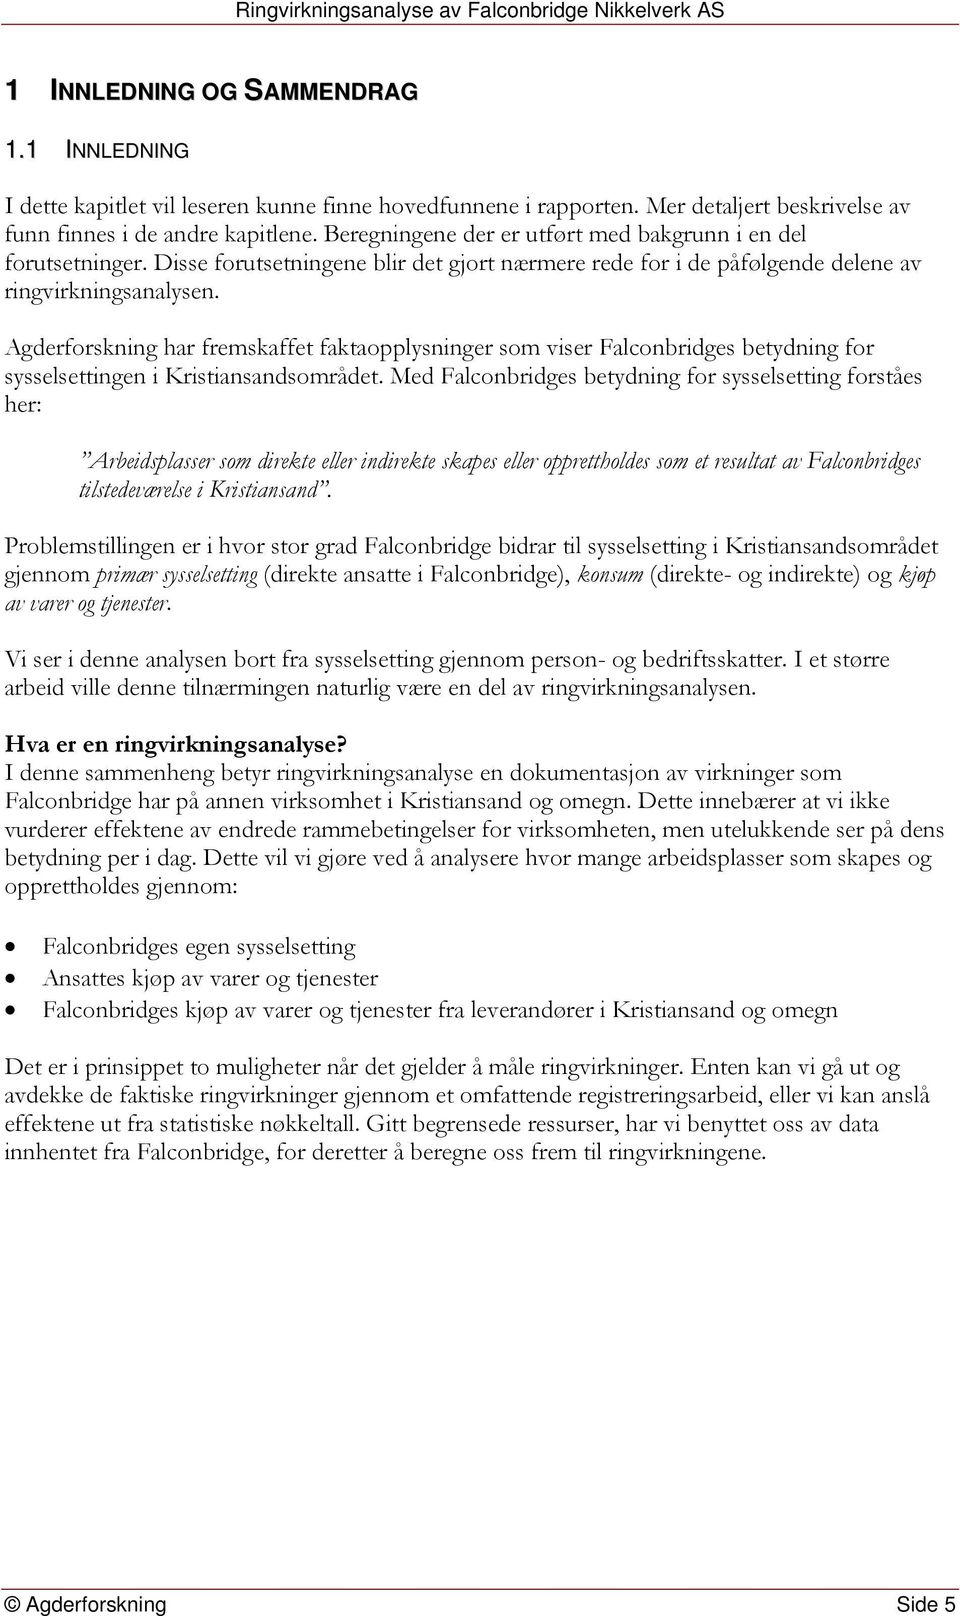 Agderforskning har fremskaffet faktaopplysninger som viser Falconbridges betydning for sysselsettingen i Kristiansandsområdet.